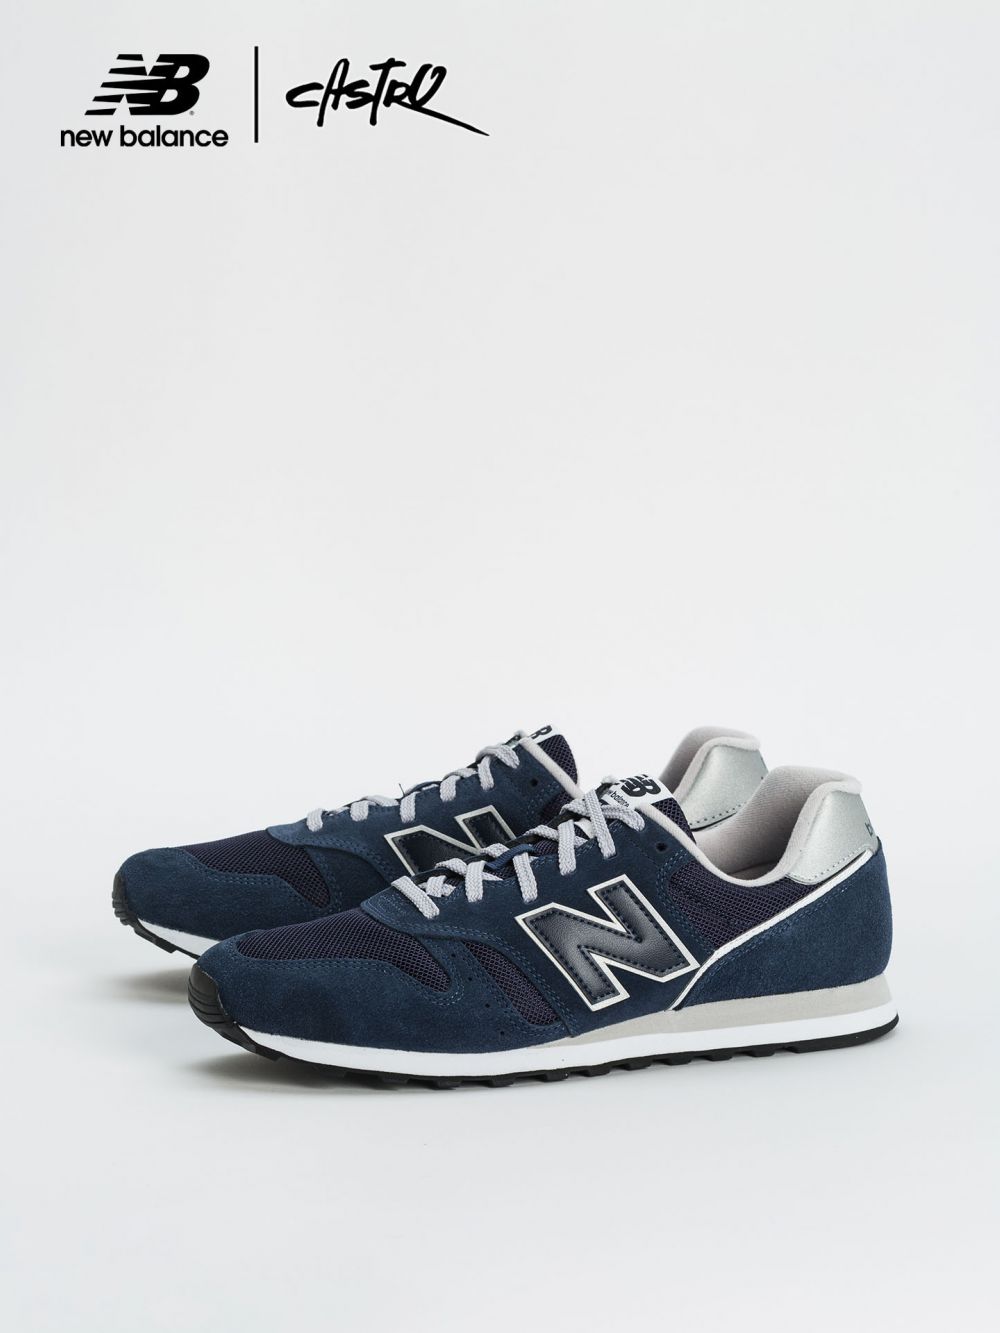 נעלי New Balance מדגם ML373 צבעי כחול וכסף/ גברים